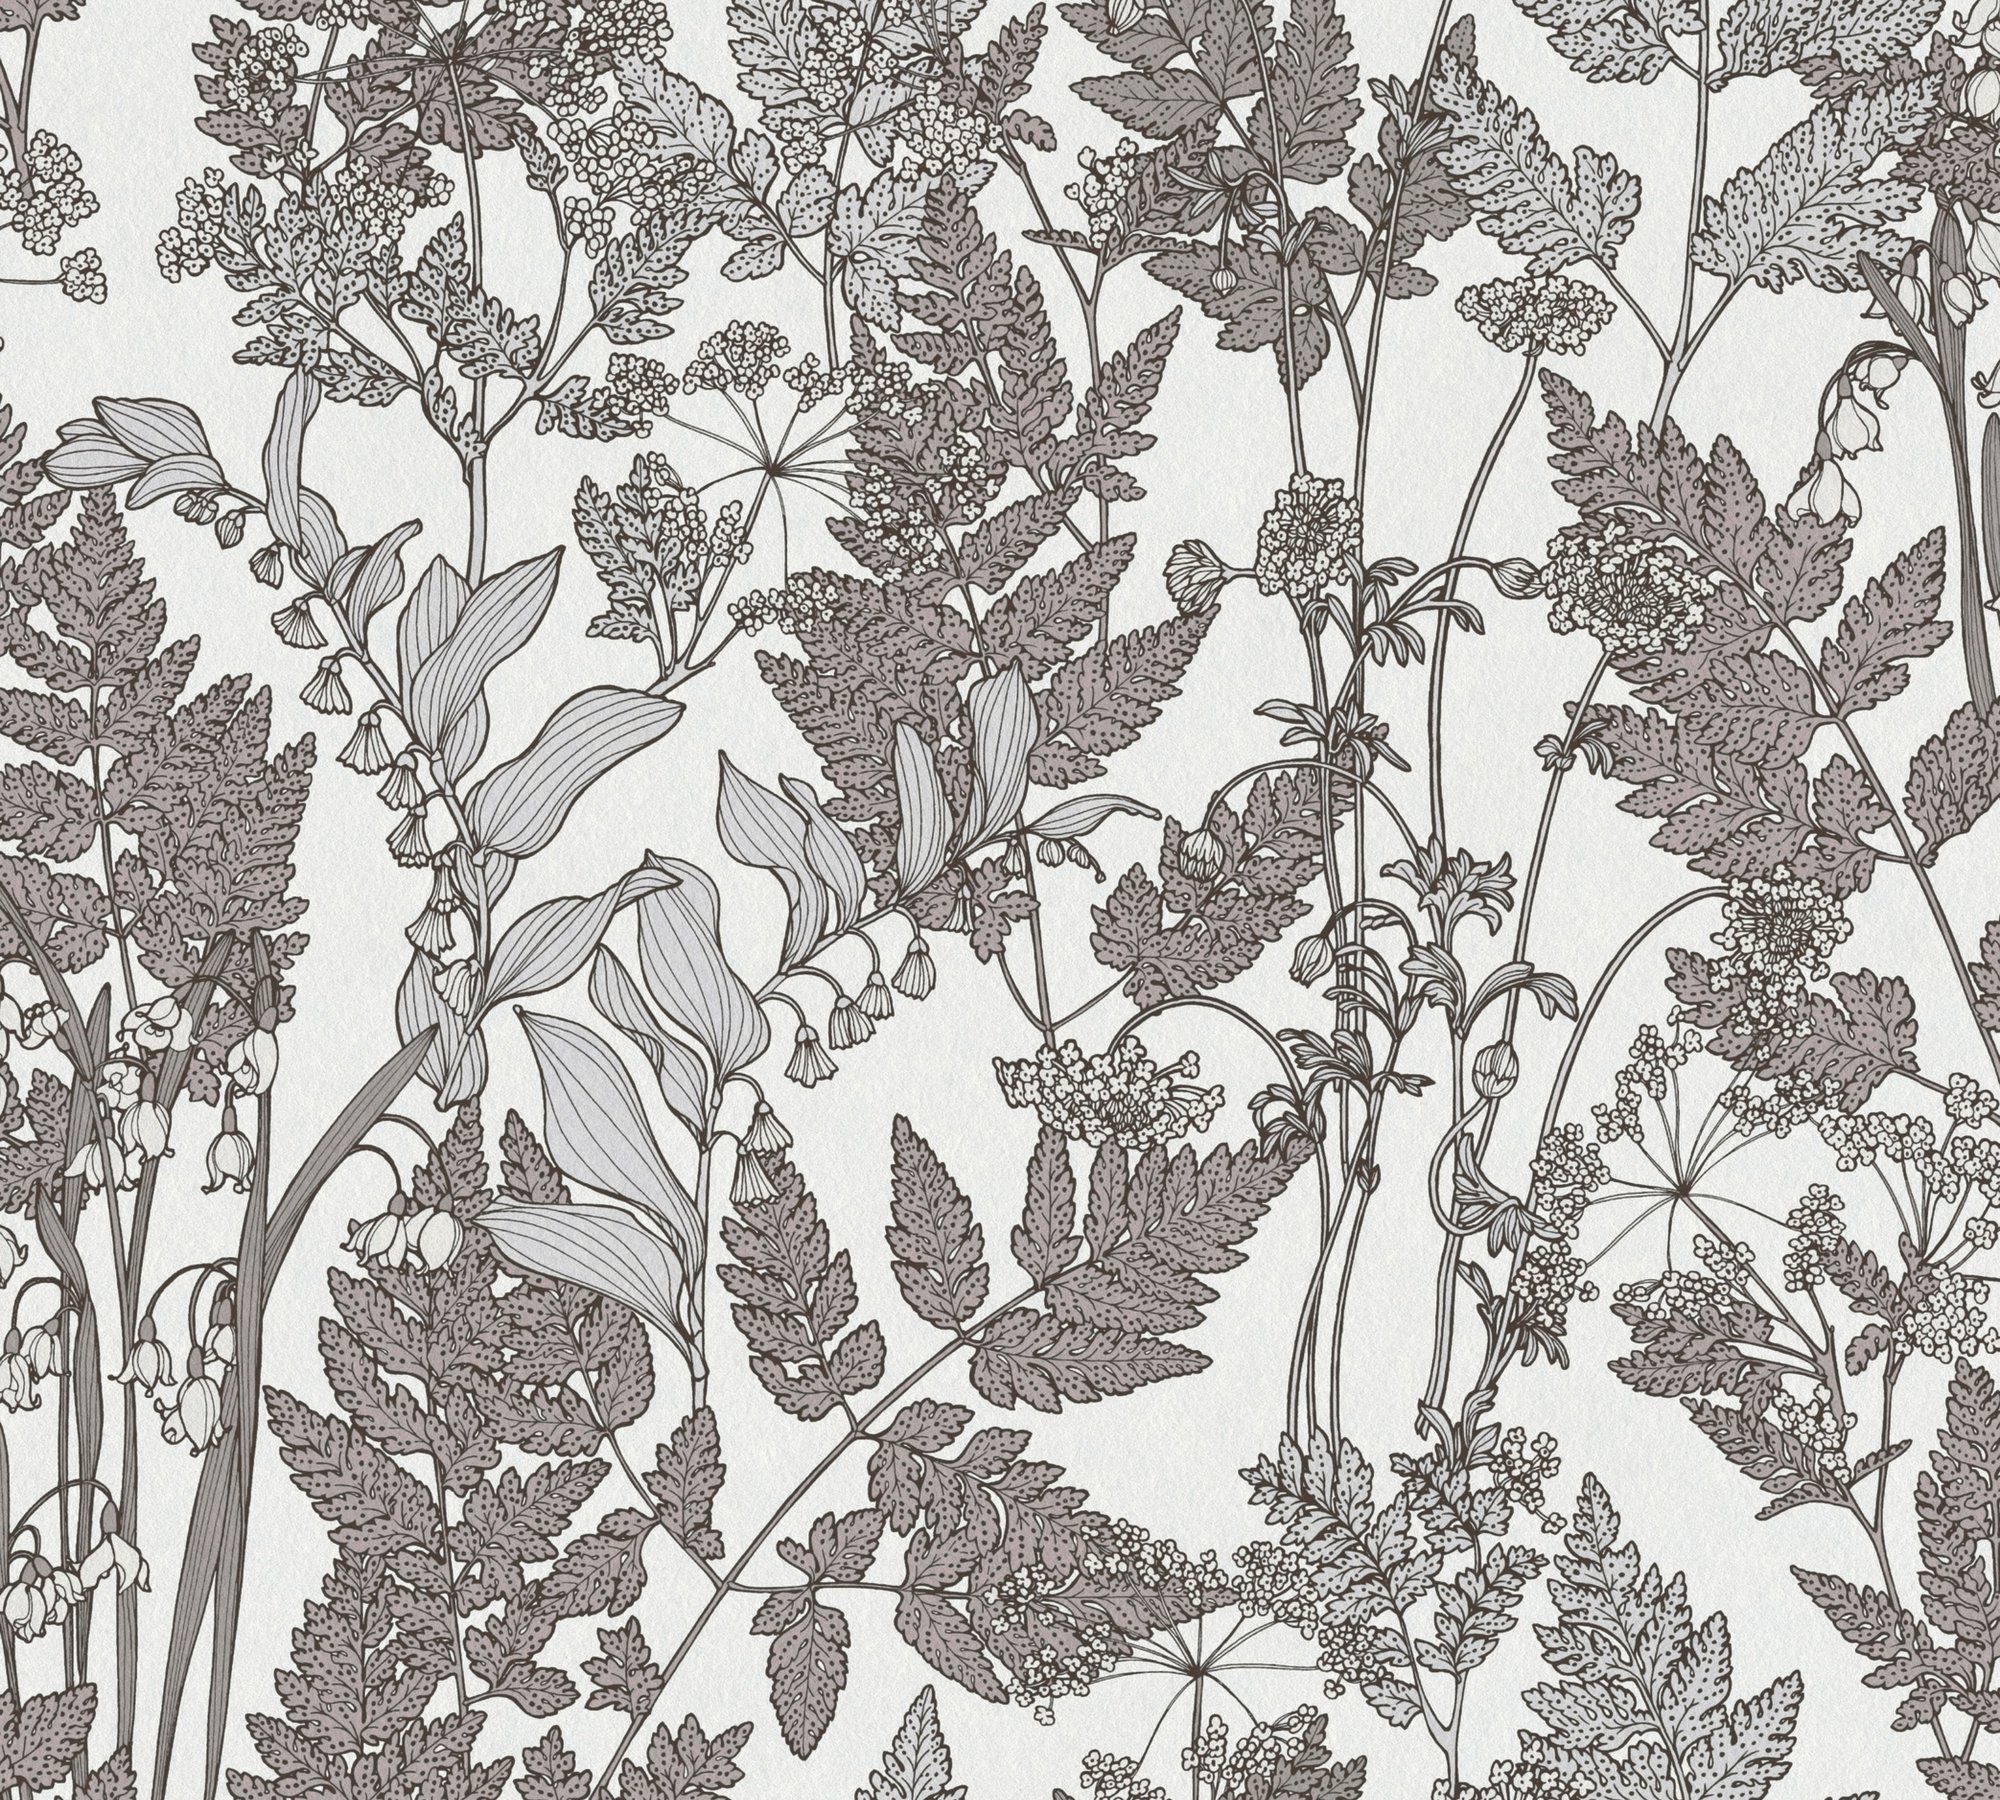 Tapete glatt, A.S. Création Paper Architects Vliestapete Floral grau/weiß floral, Blumen Impression, botanisch,